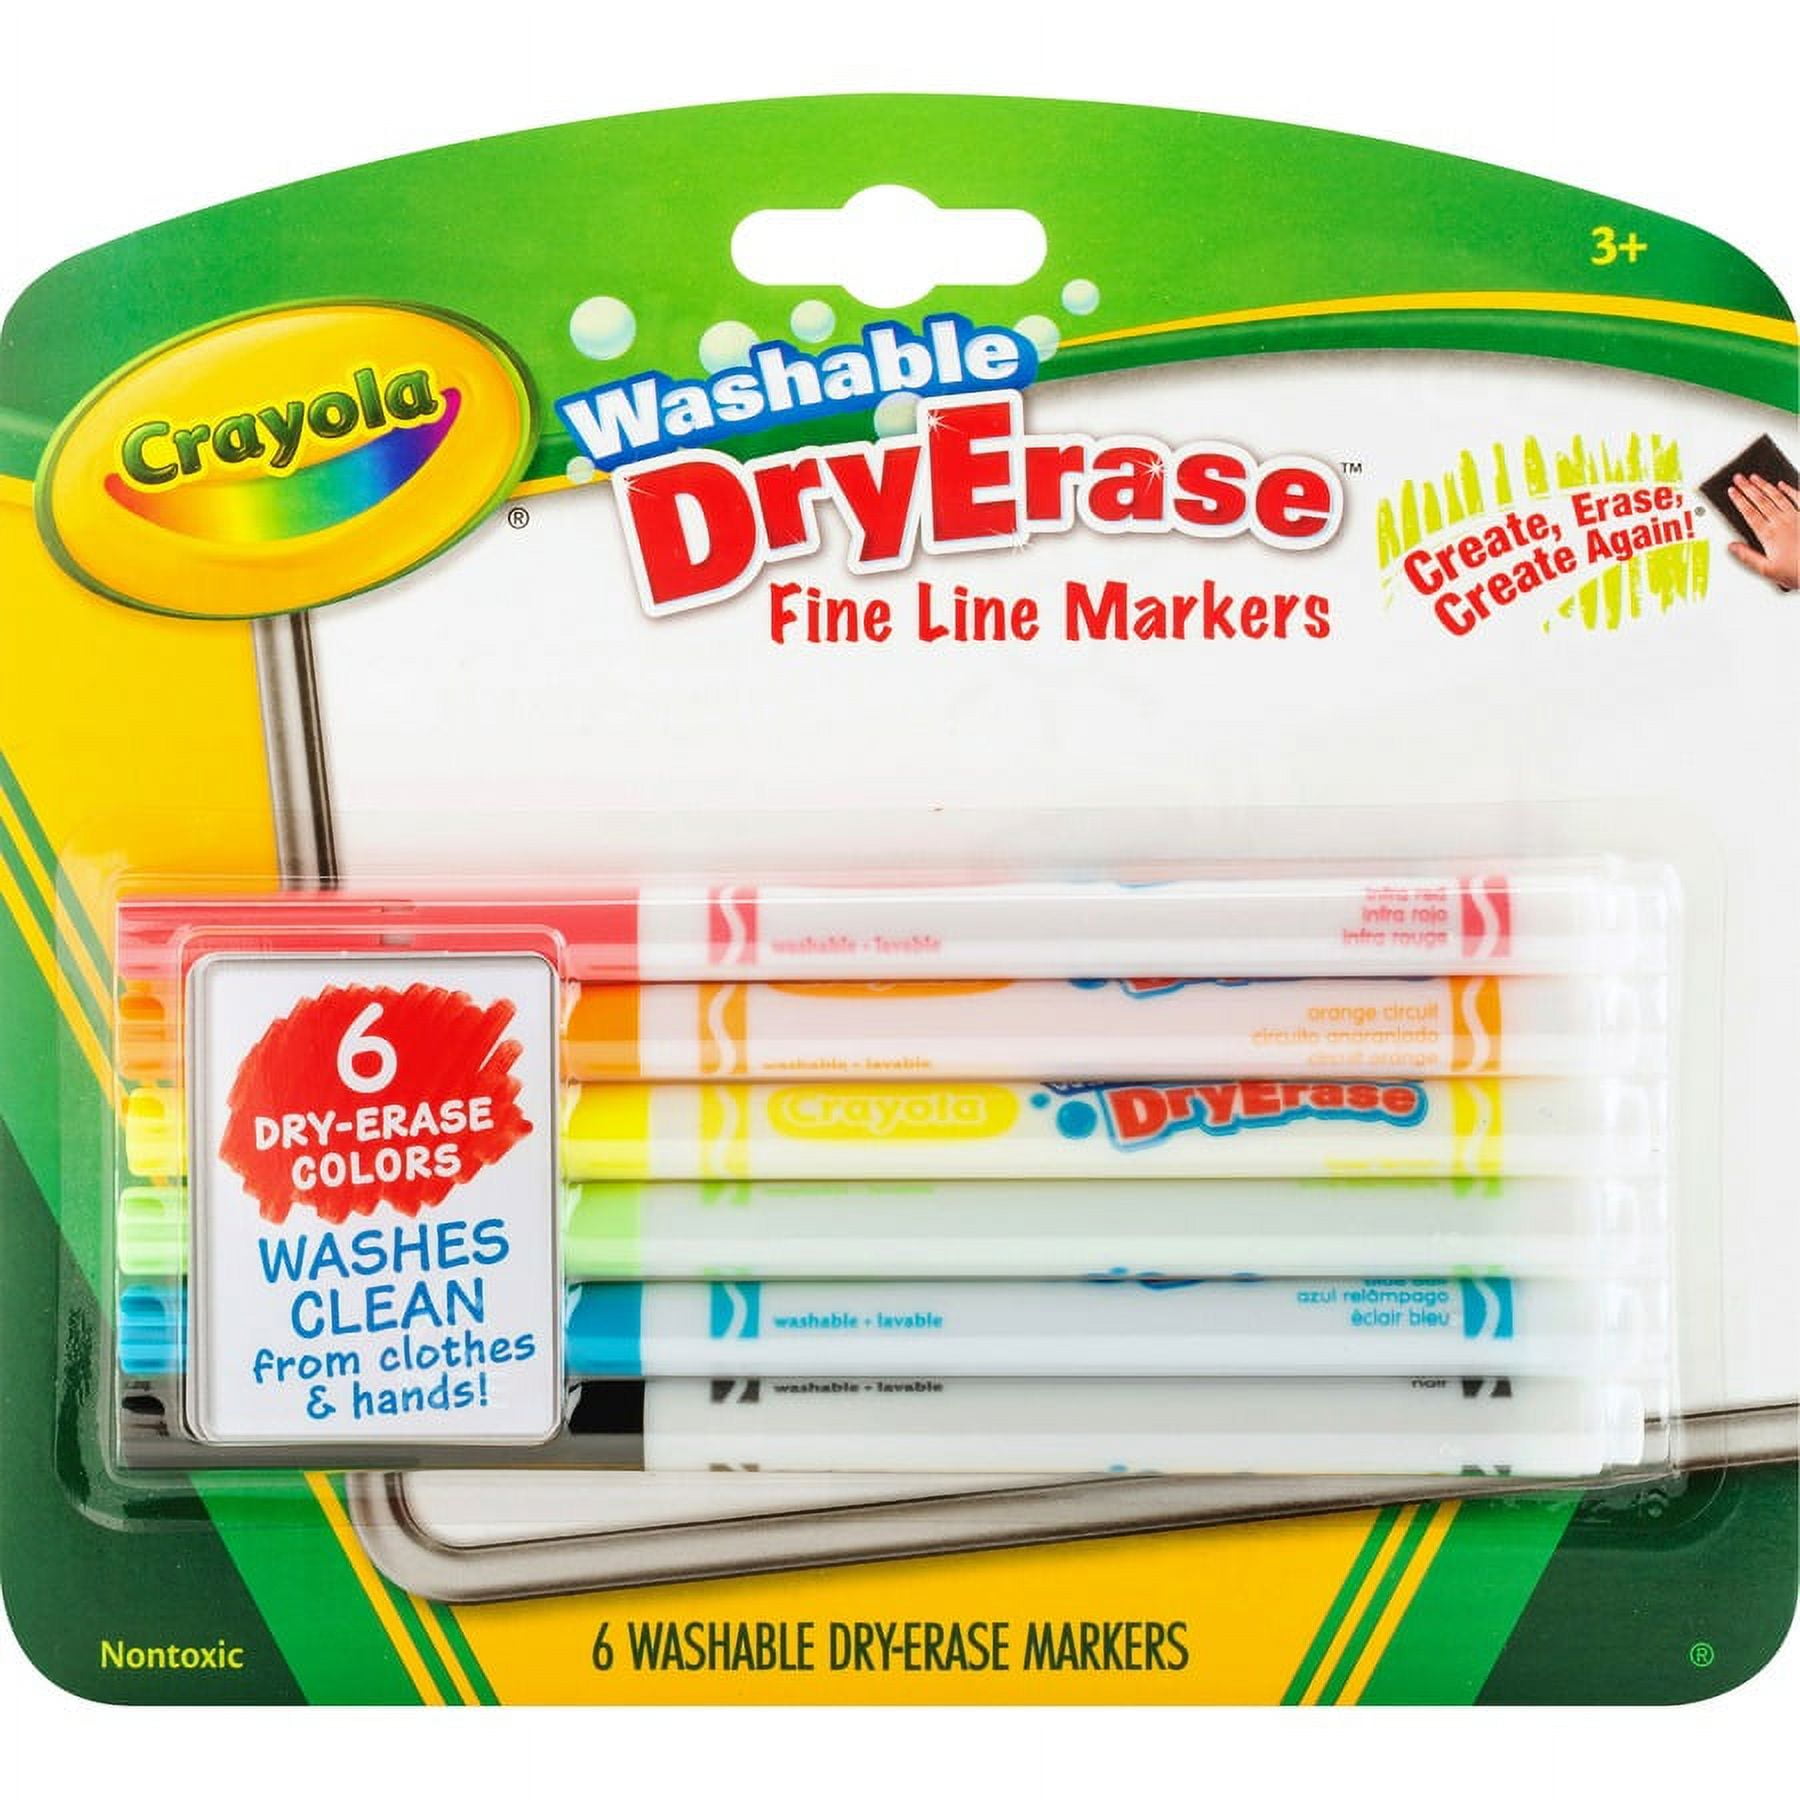 Crayola Washable Dry Erase Marker